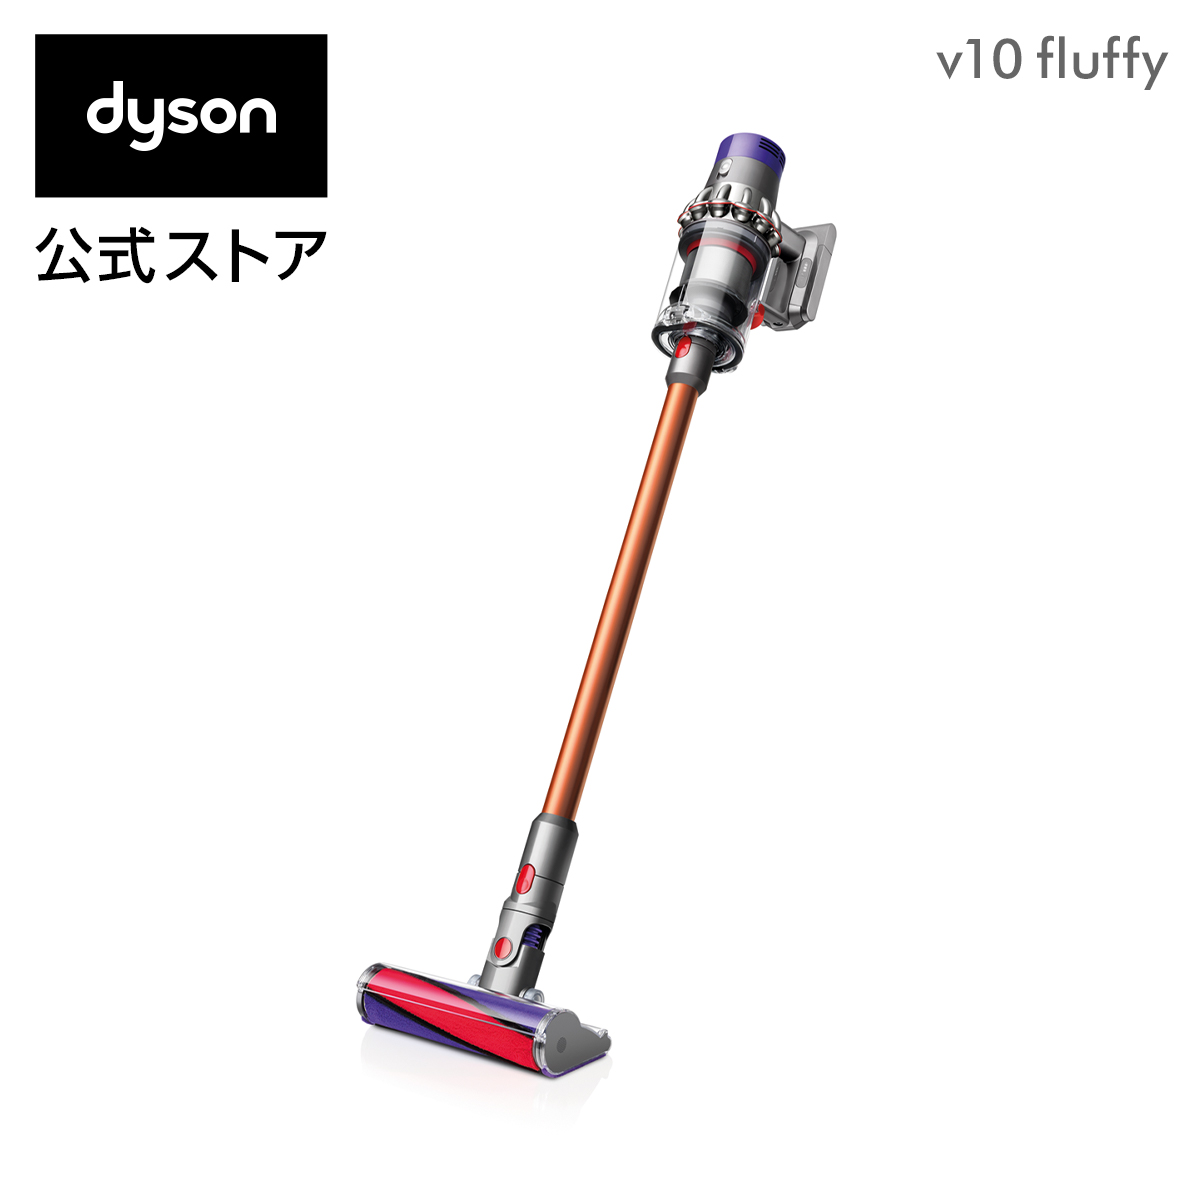 楽天市場 ダイソン Dyson Cyclone V10 Fluffy サイクロン式 コードレス掃除機 Dyson Sv12ff 18年モデル フロアドックセットではありません Dyson公式 楽天市場店